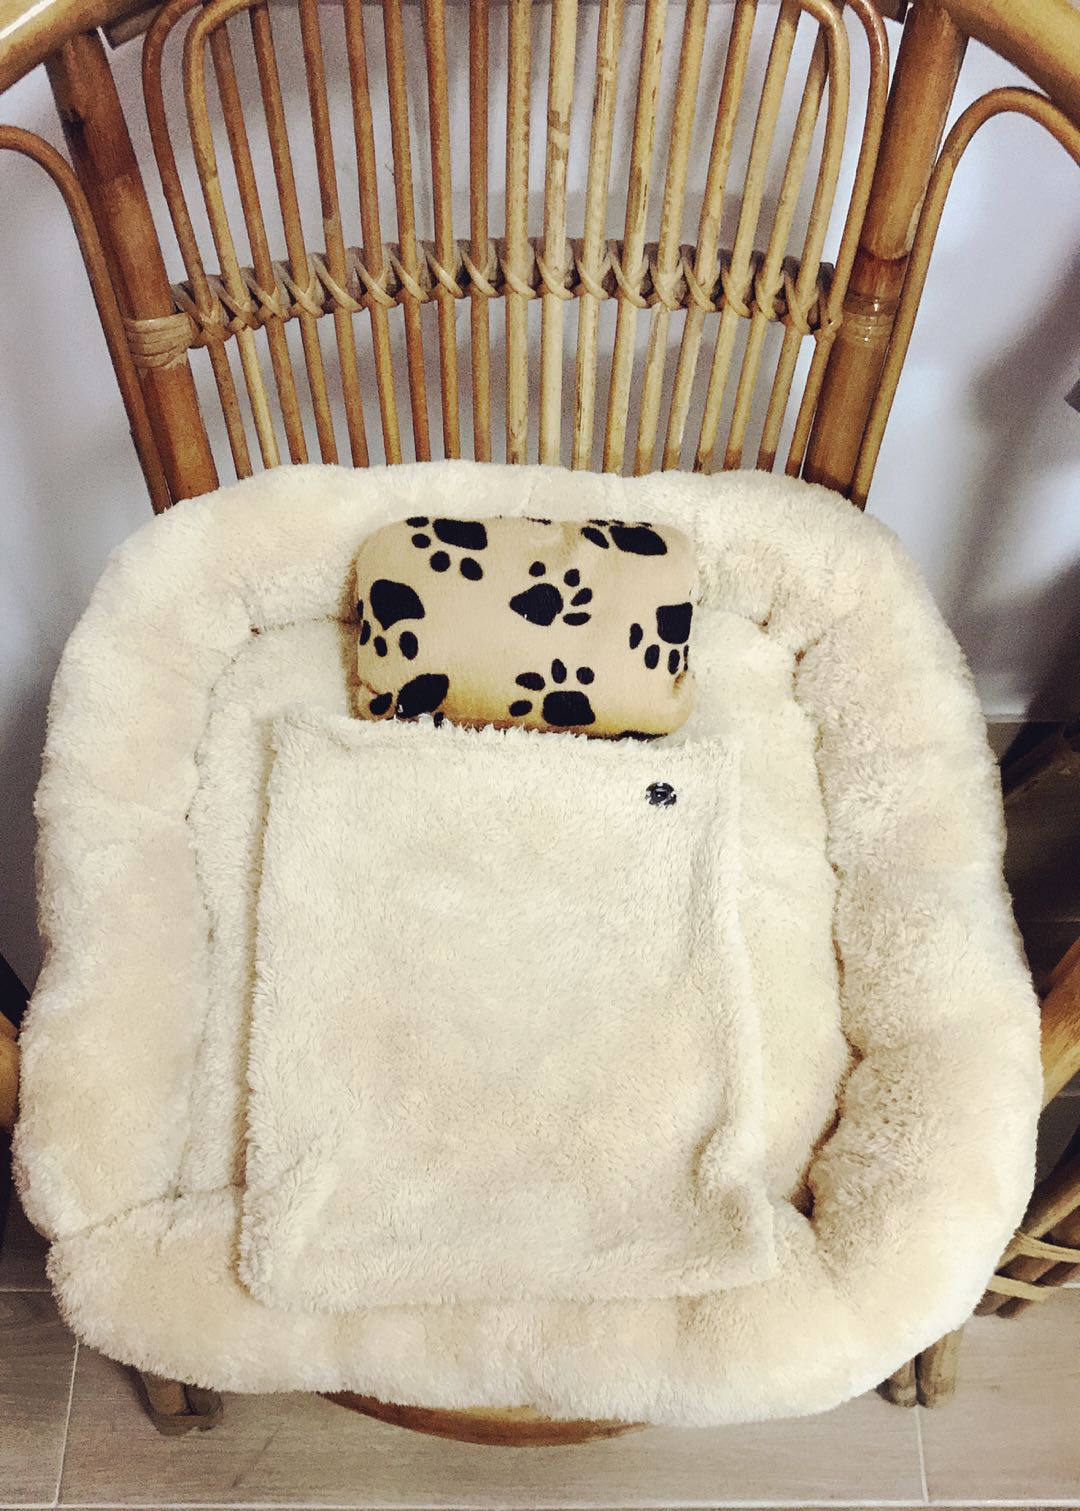 冬天来了，毛孩子也需要一个暖暖的被窝过冬。所以来制作一款暖暖“狗”窝给毛孩子吧。
1、准备布料、棉花
2、将布料剪一块正方形和一条长条型
3、将方布和长条布缝合好
4、将棉花塞进方布和长条中，封口
5、将长条围绕方布边拼接缝合
6、用一块布料做小枕头和被子，完成